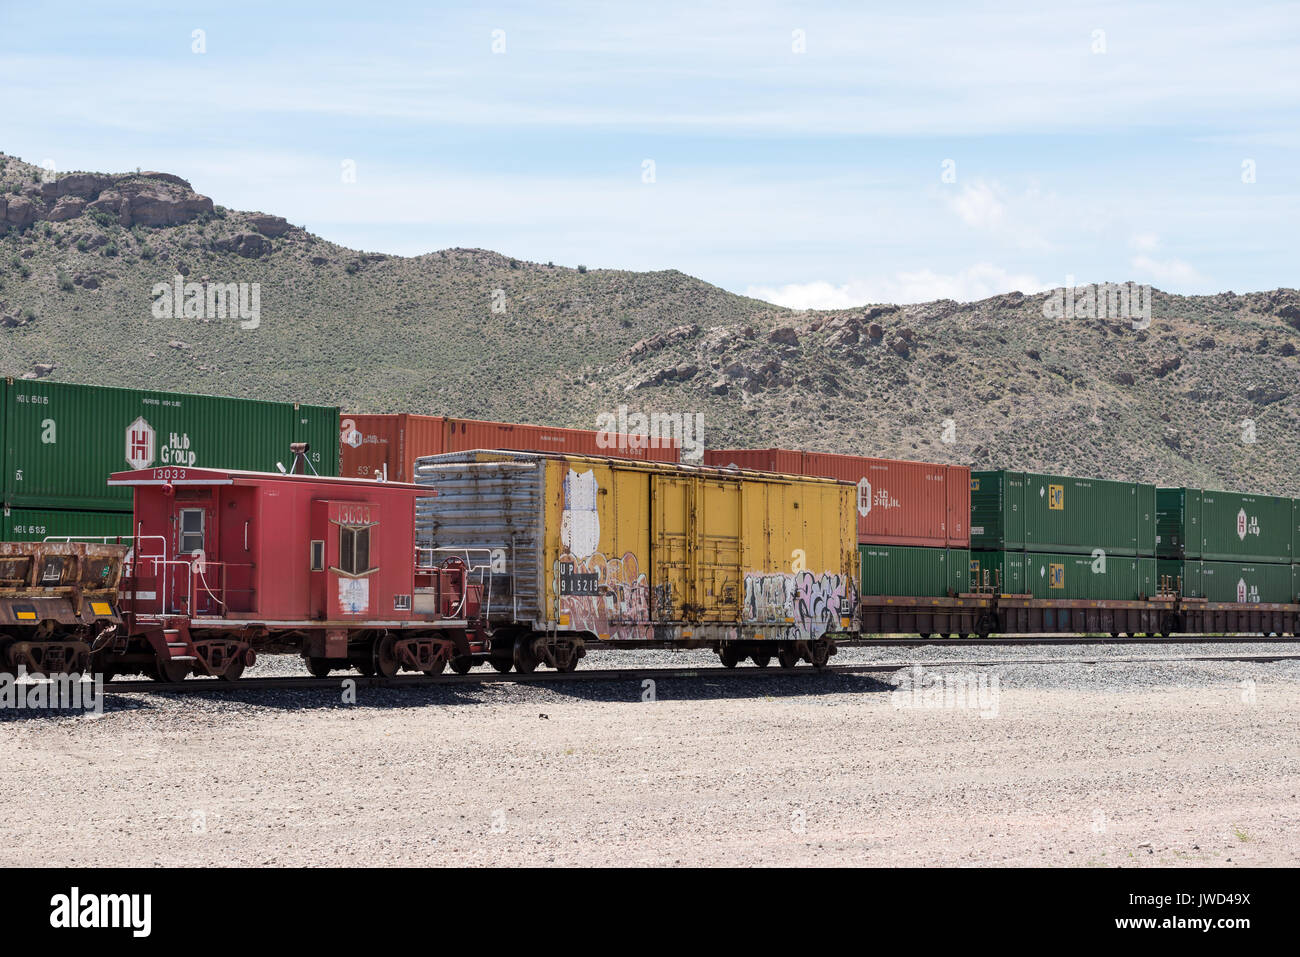 Doppel intermodalen Container auf einem Güterzug in Caliente, NV gestapelt. Stockfoto